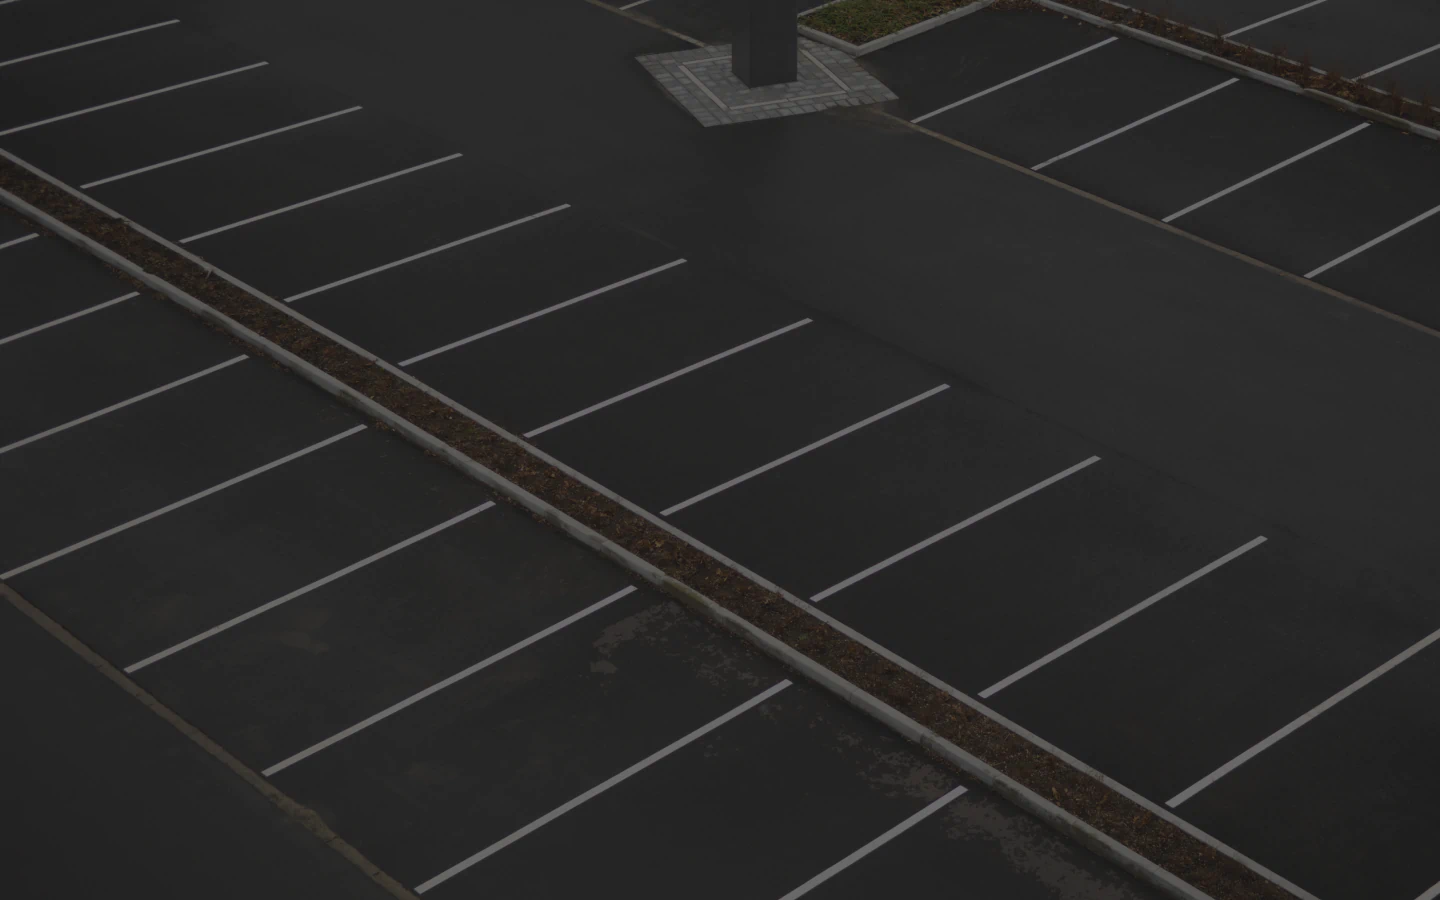 an empty parking lot